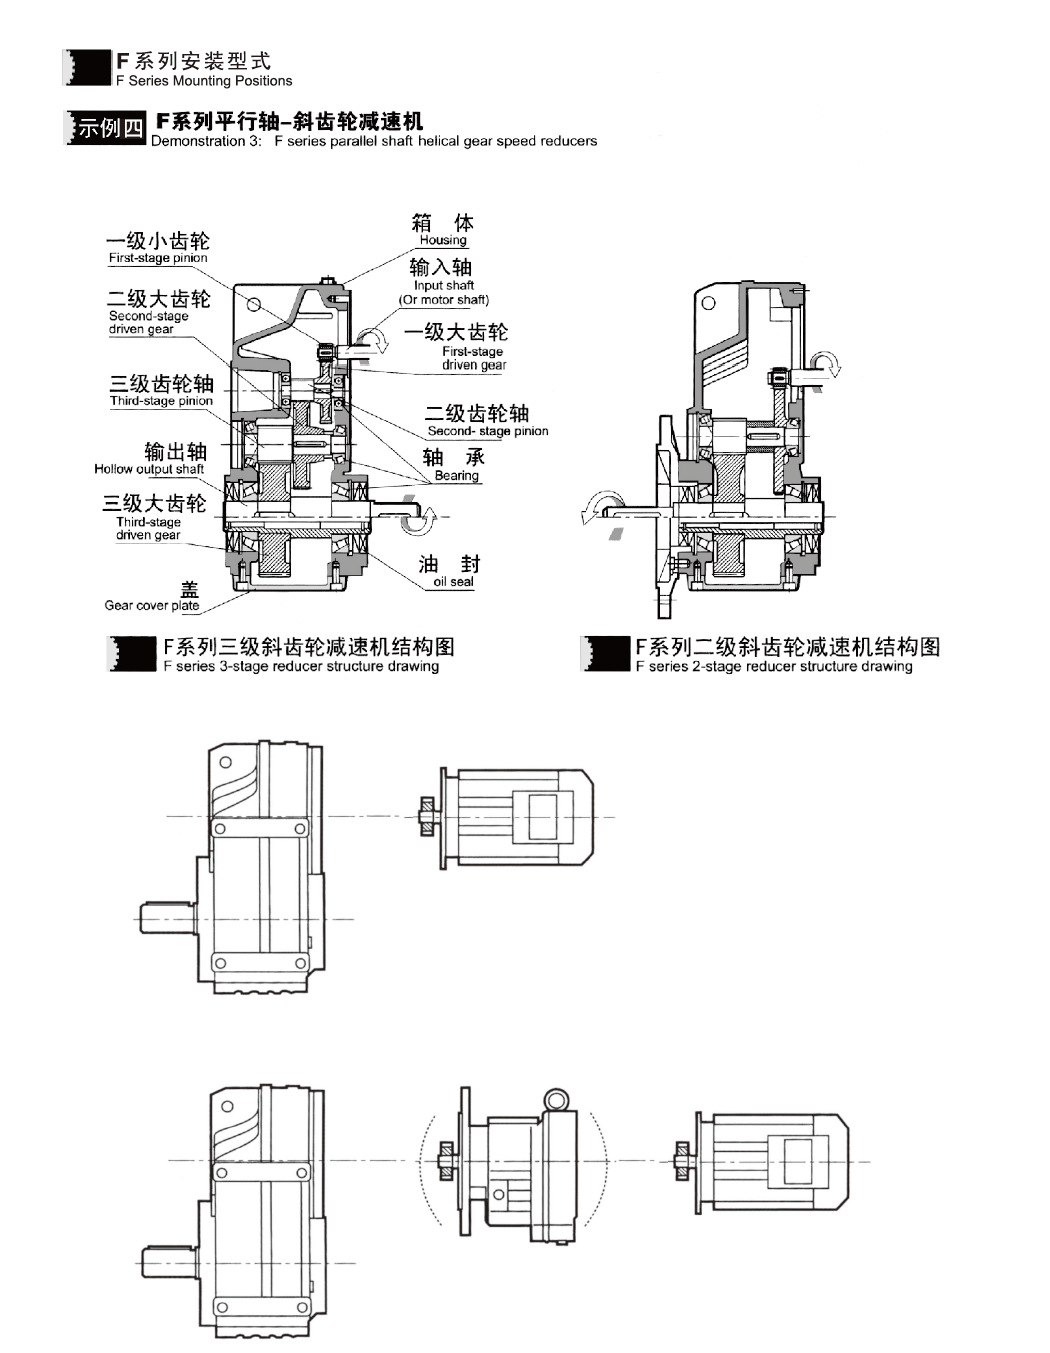 Zhujiang Gearboxes for Crane